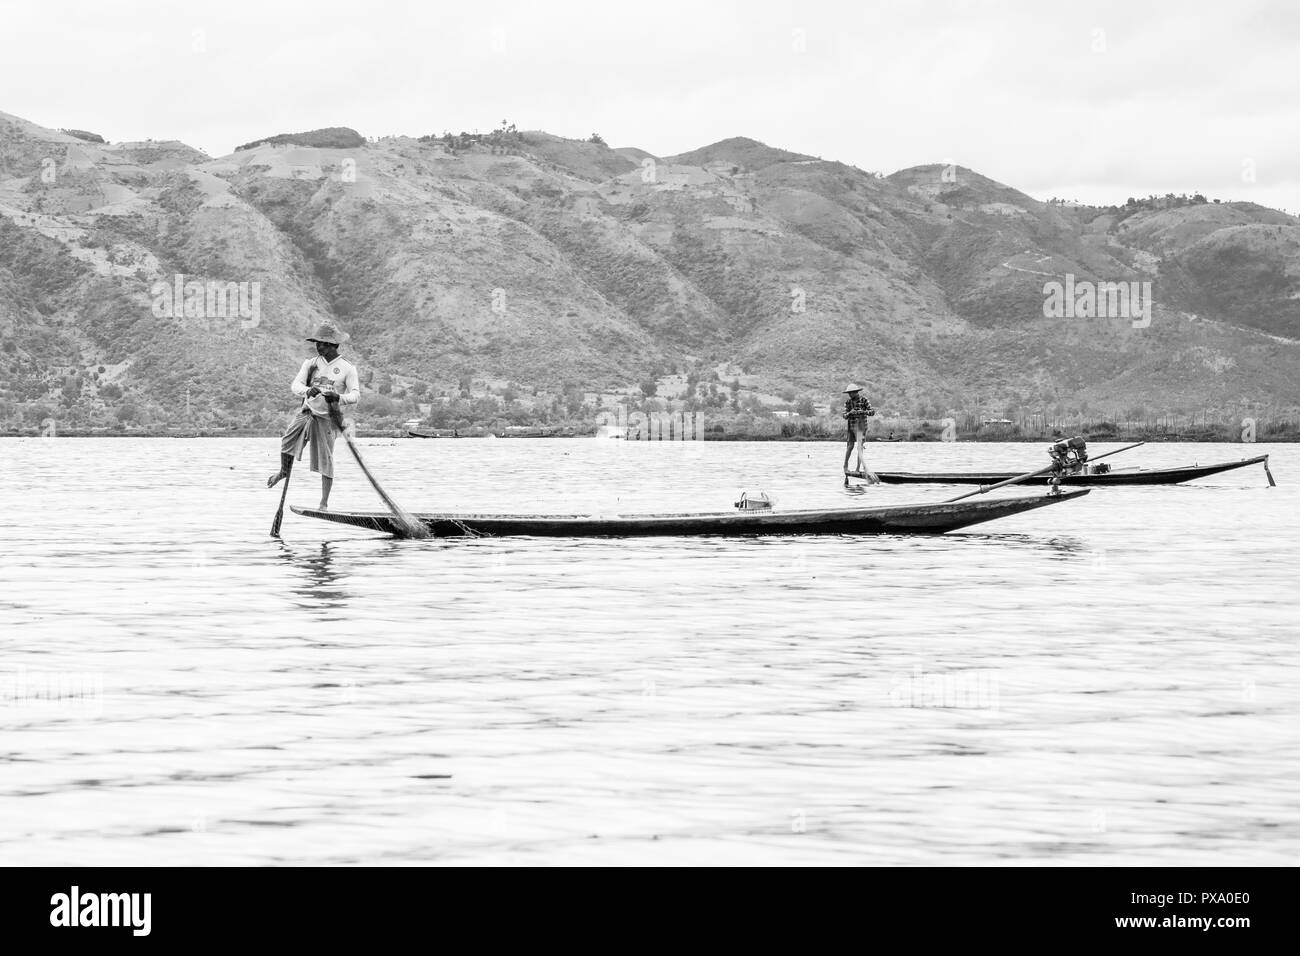 Reisen: Lokale junge Burmesische fischer Tragen von Manchester United Shirt, Lastausgleich und Lenkung Boot mit seinem Fuß in Inle See, Burma, Myanmar, Asien Stockfoto